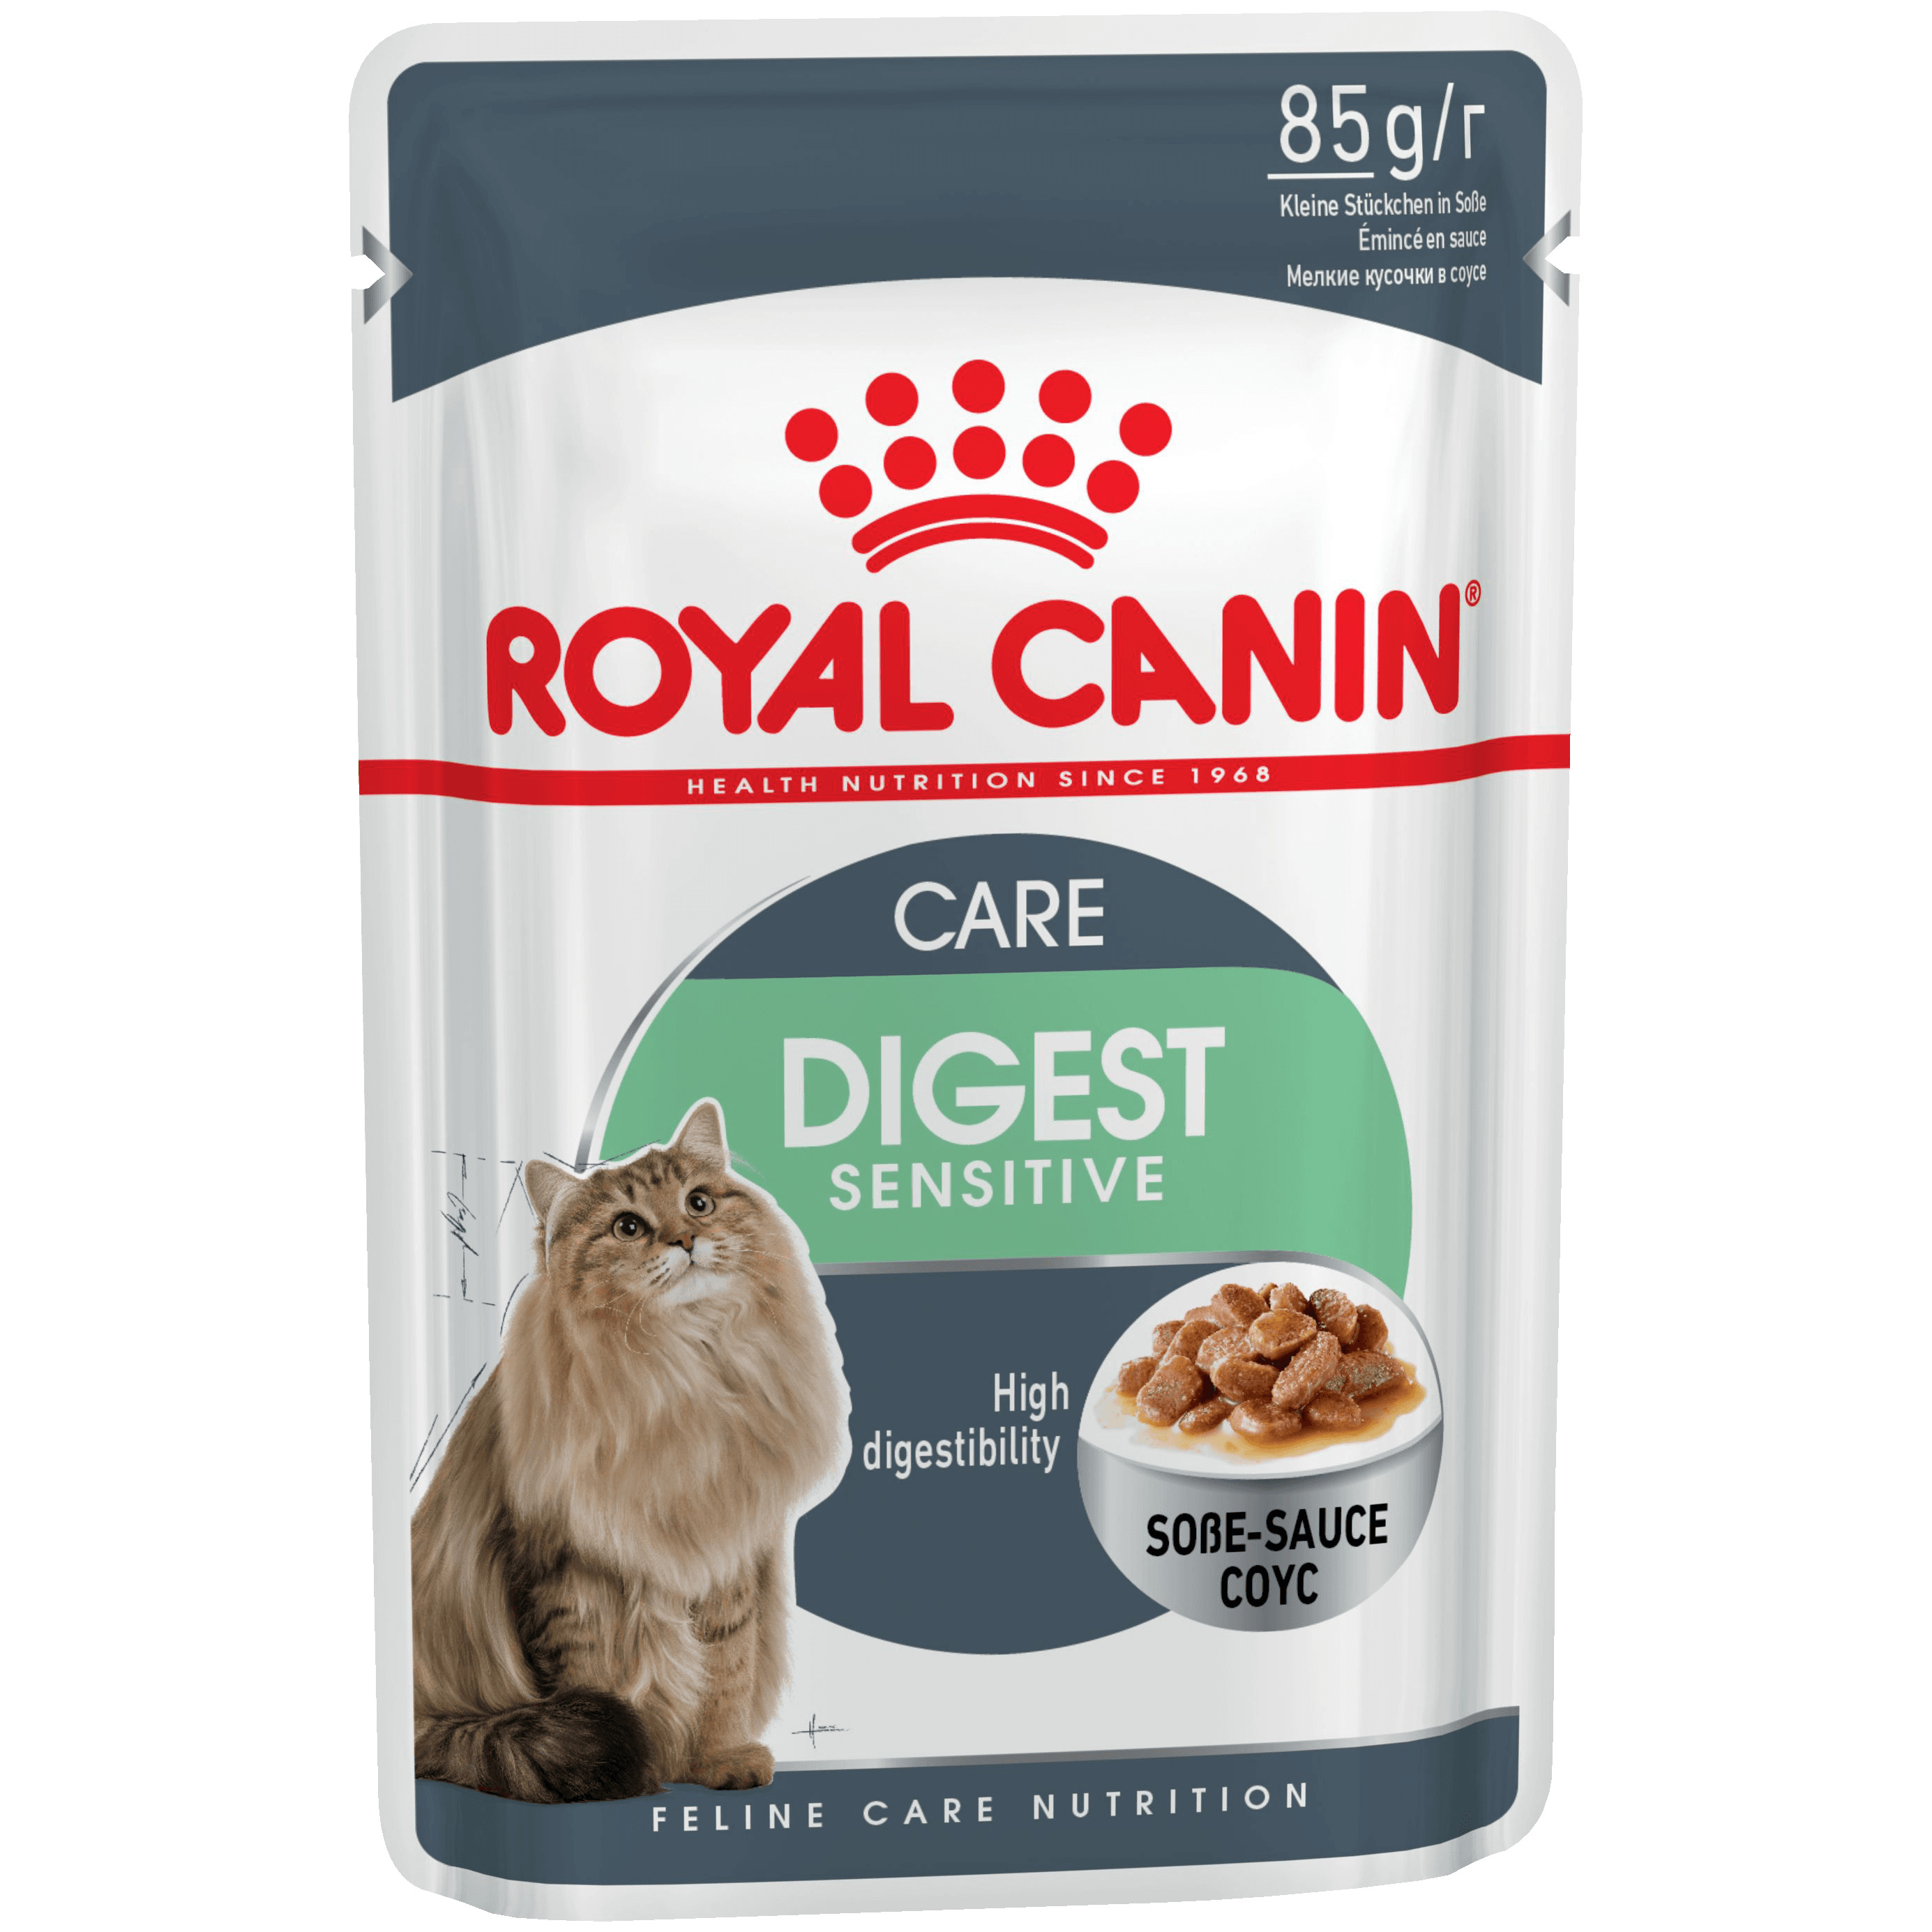 Влажный корм для кошек ROYAL CANIN Digest Sensitive, мясо, 85г, Feline Care Nutrition Digest Sensitive  - купить